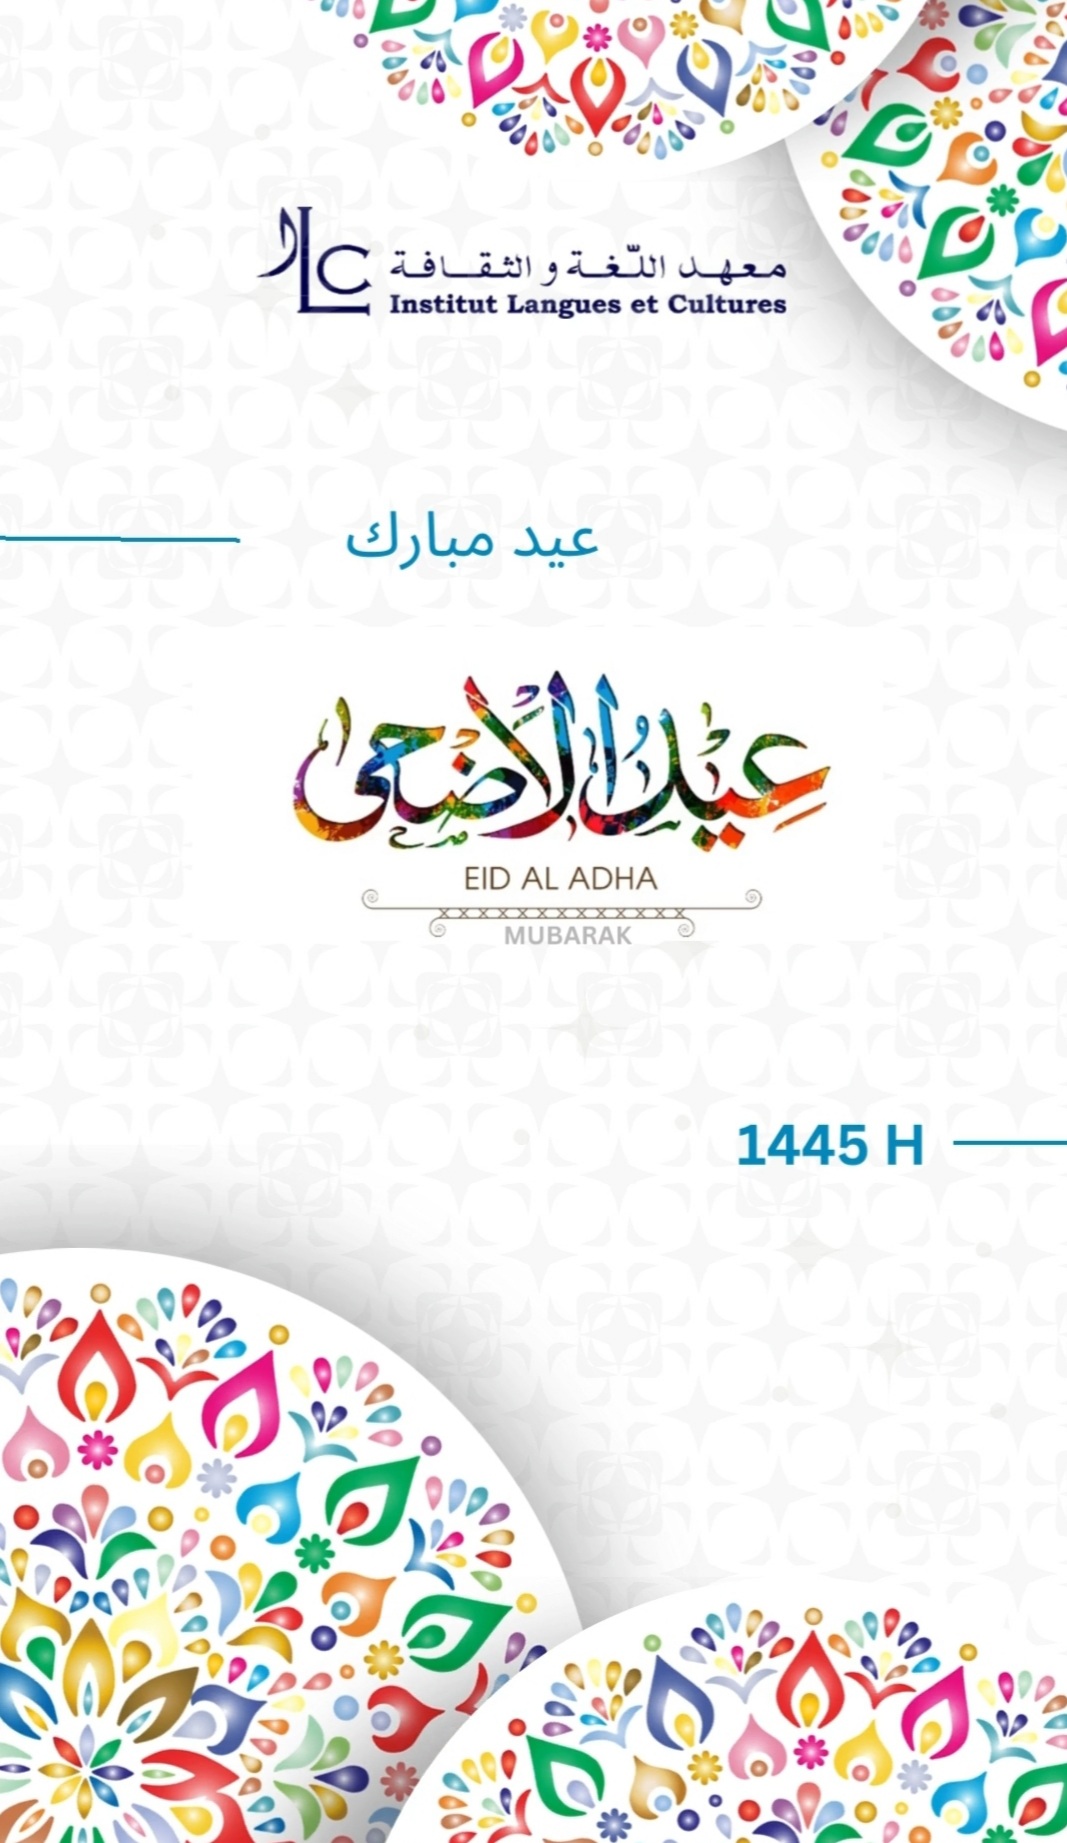 Excellente fête de l'Aïd el Adha 🥳 عيد الأضحى المبارك